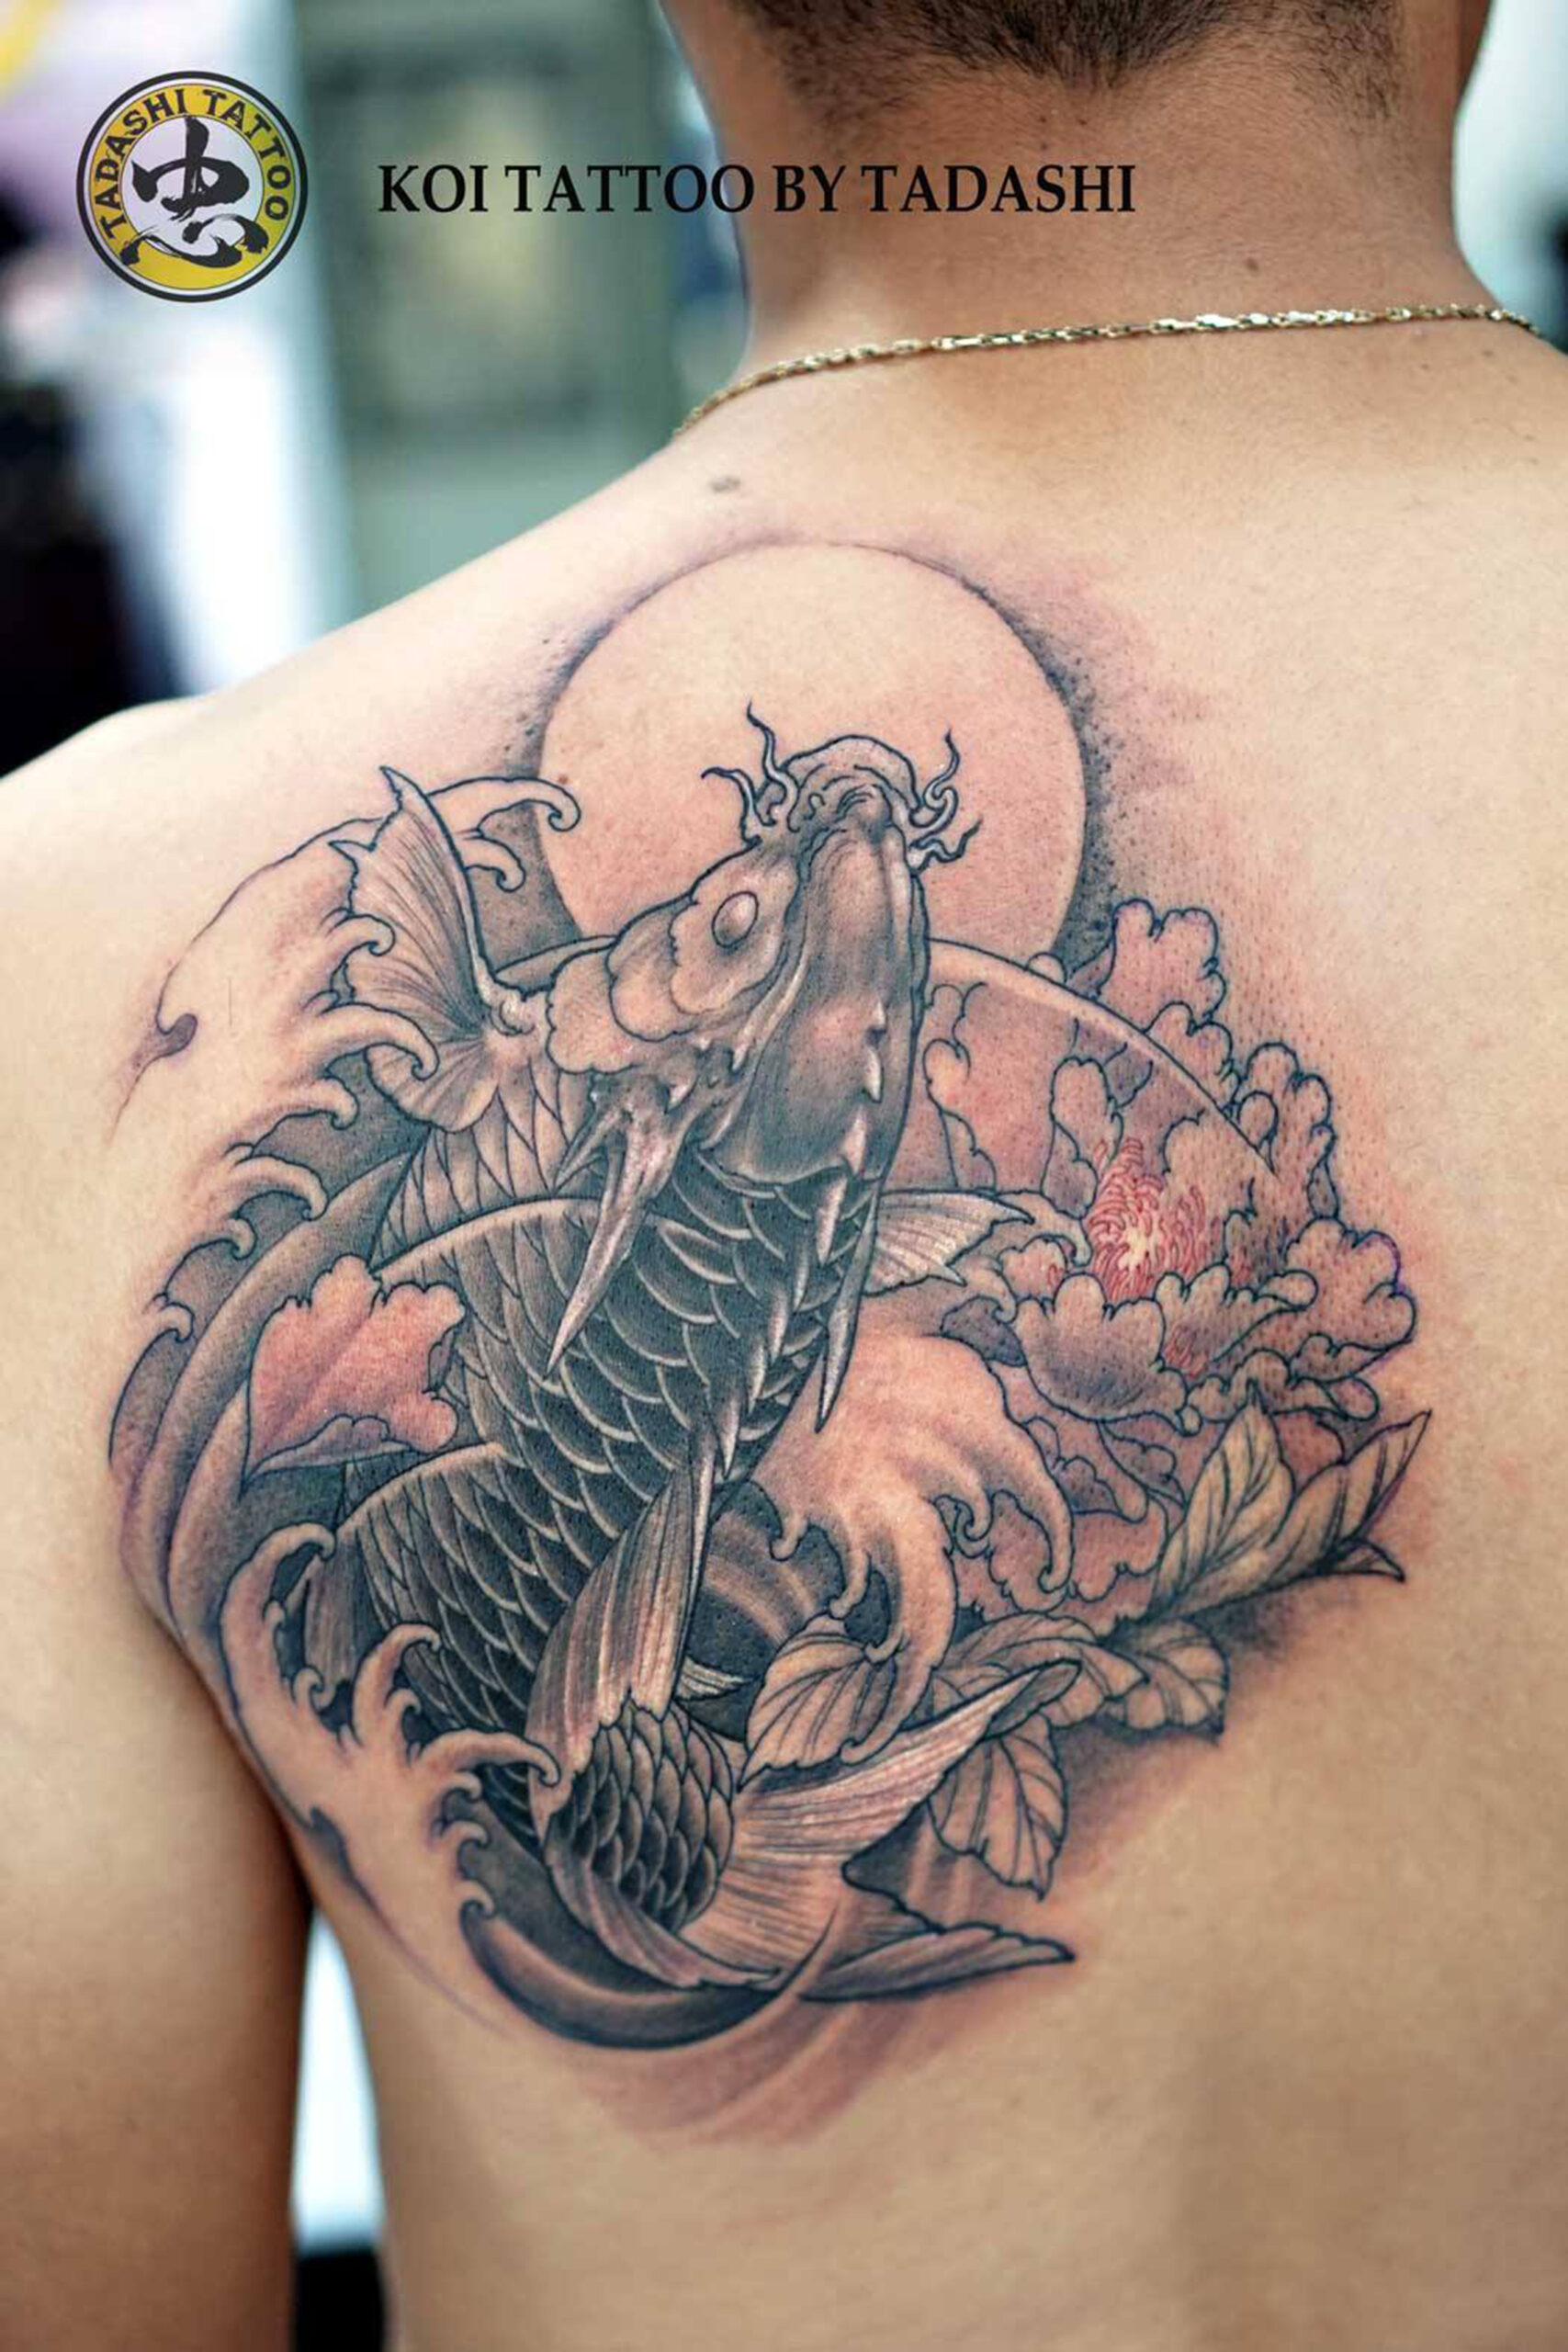 Mẫu Tattoo đẹp hình xăm độc đáo